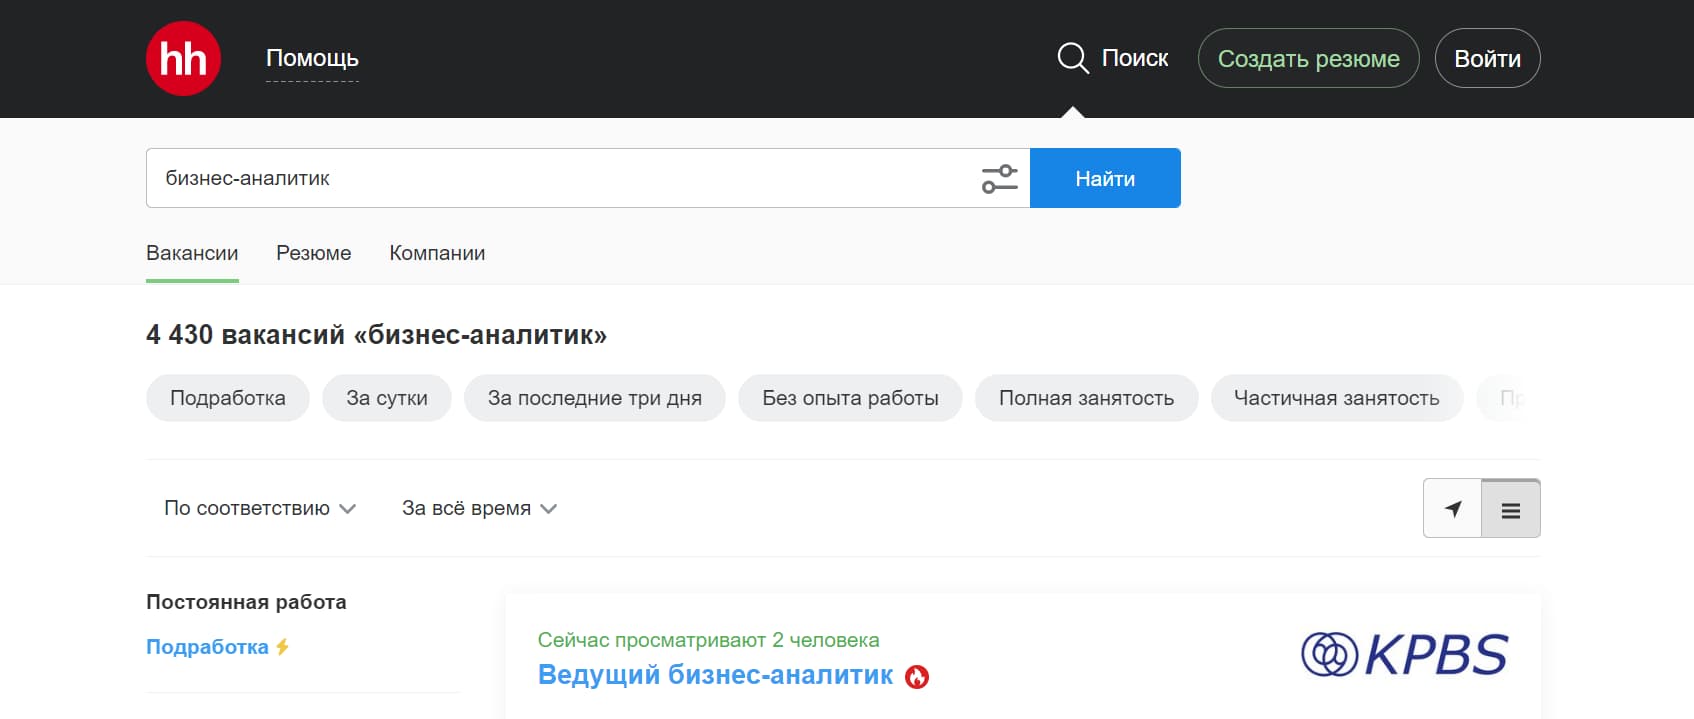 на момент написания статьи на сайте hh.ru размещено 4430 вакансий: